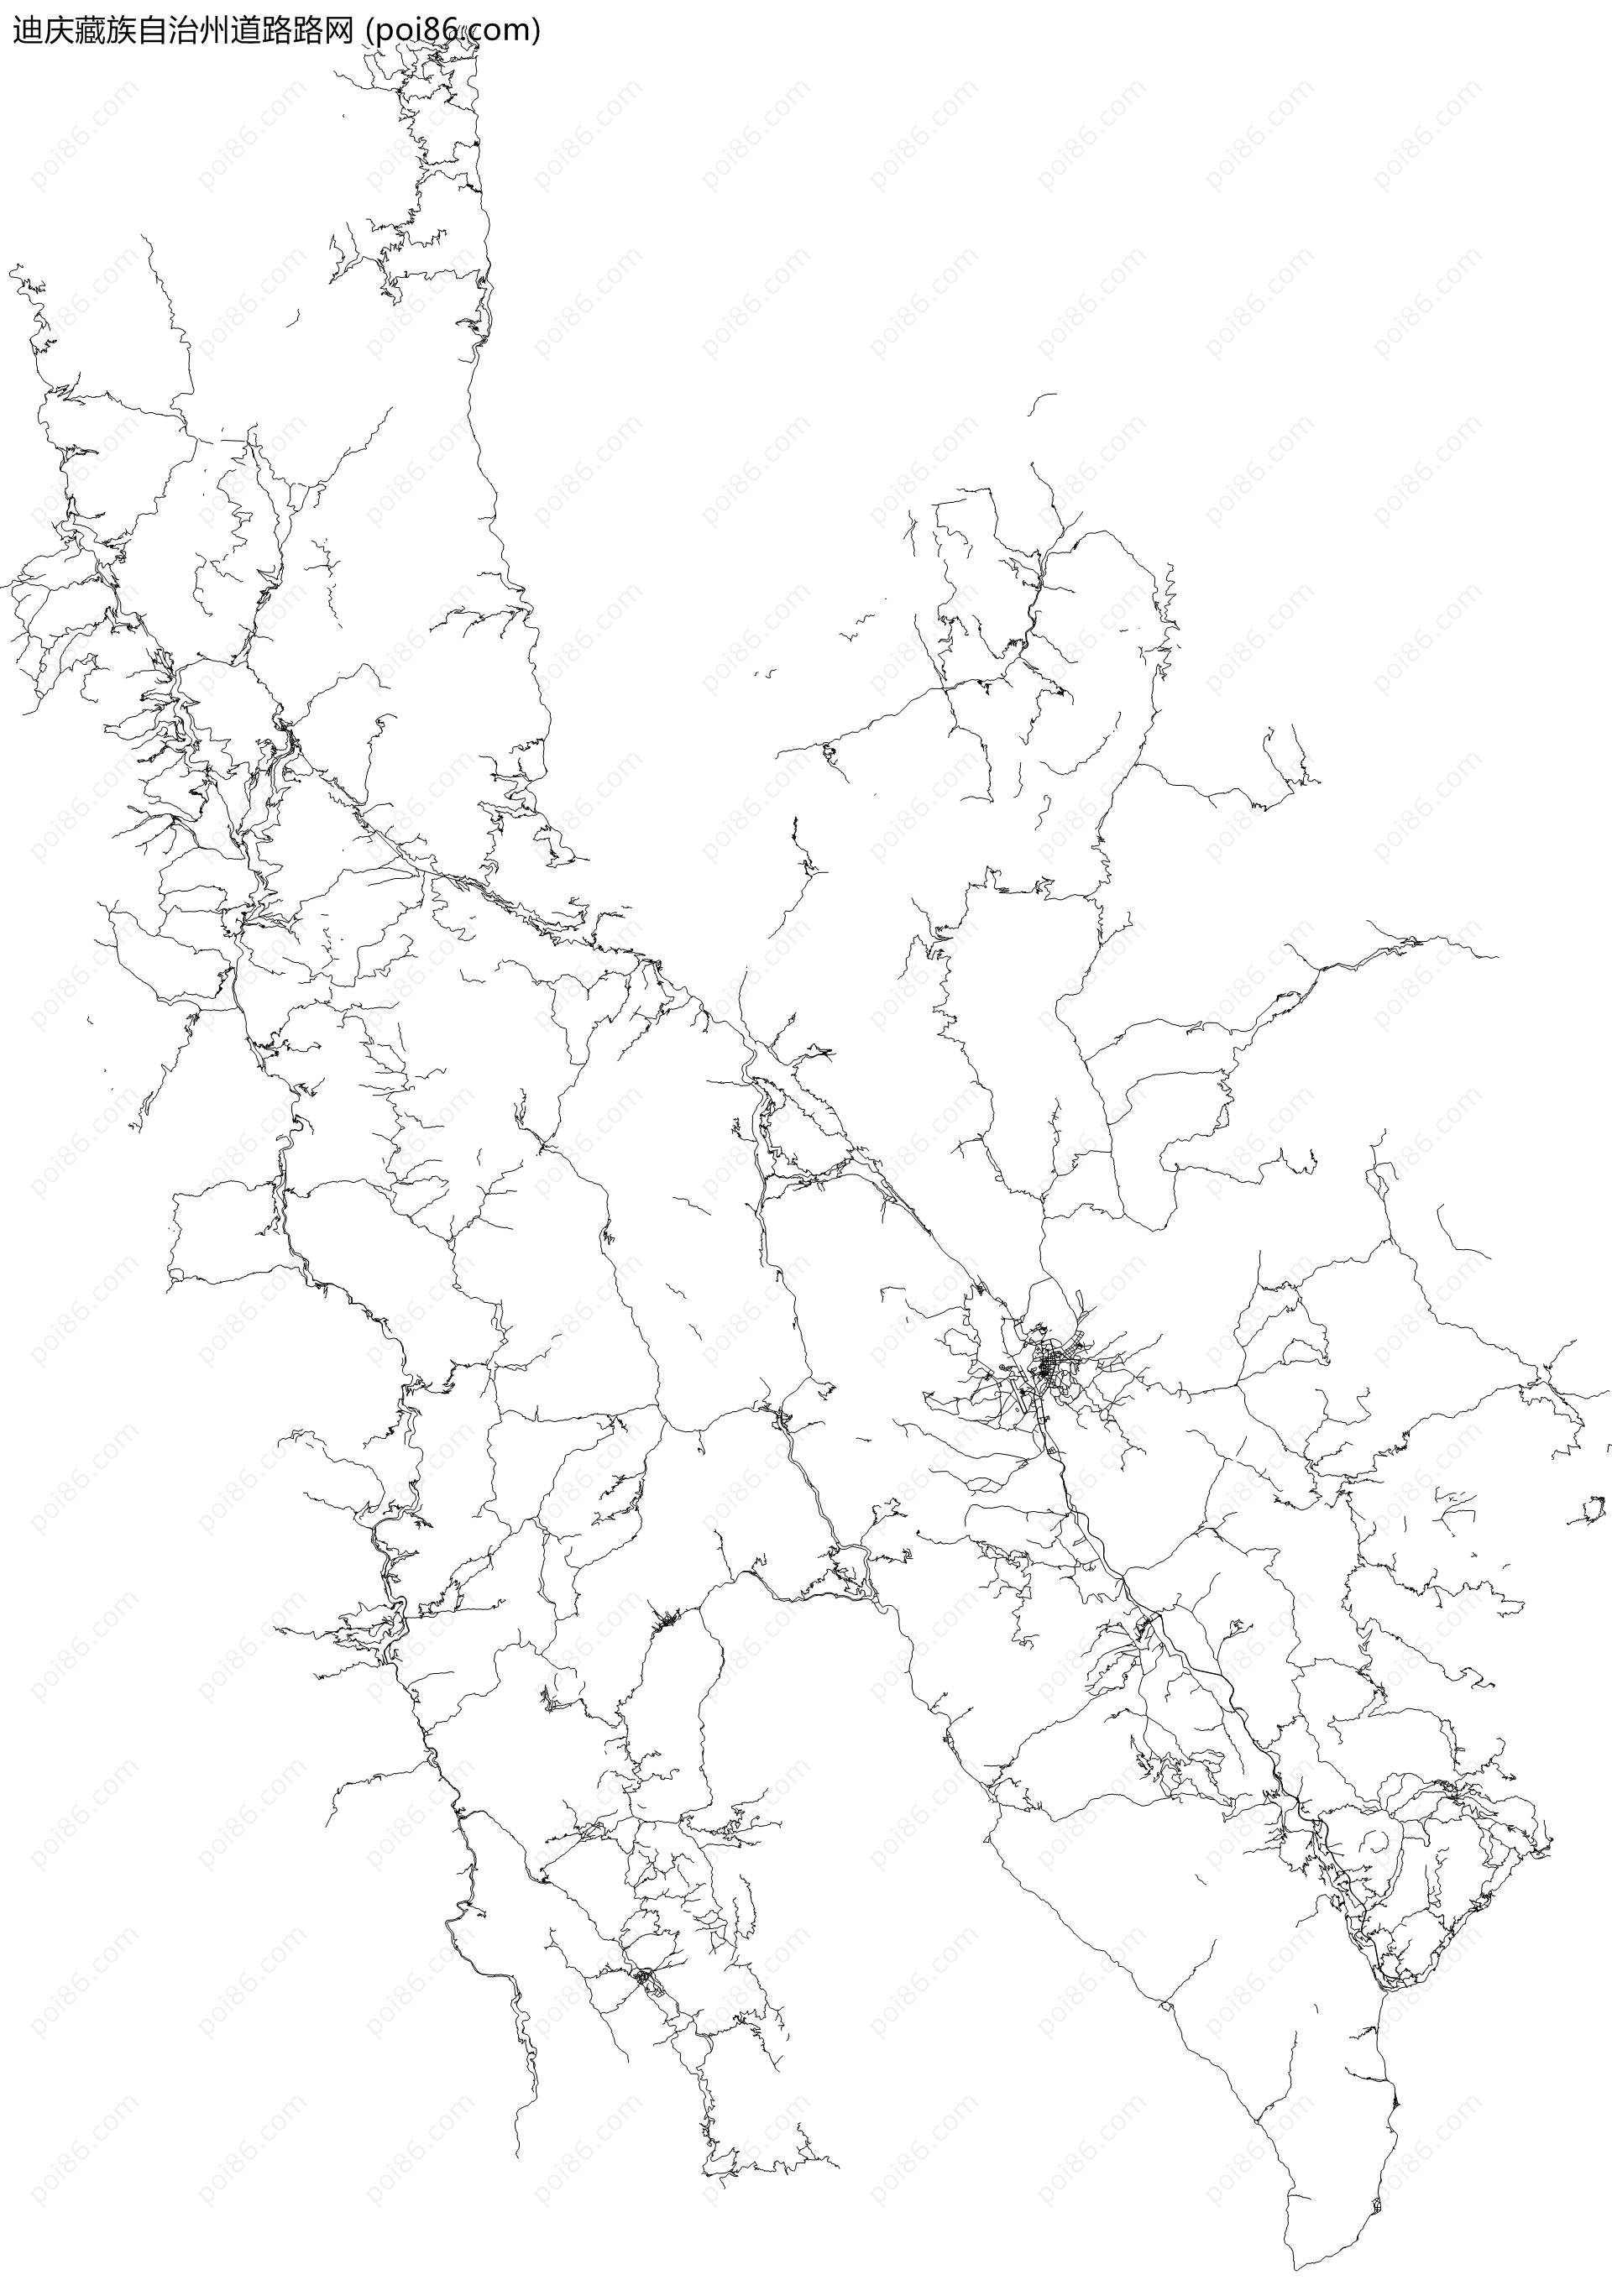 迪庆藏族自治州道路路网地图